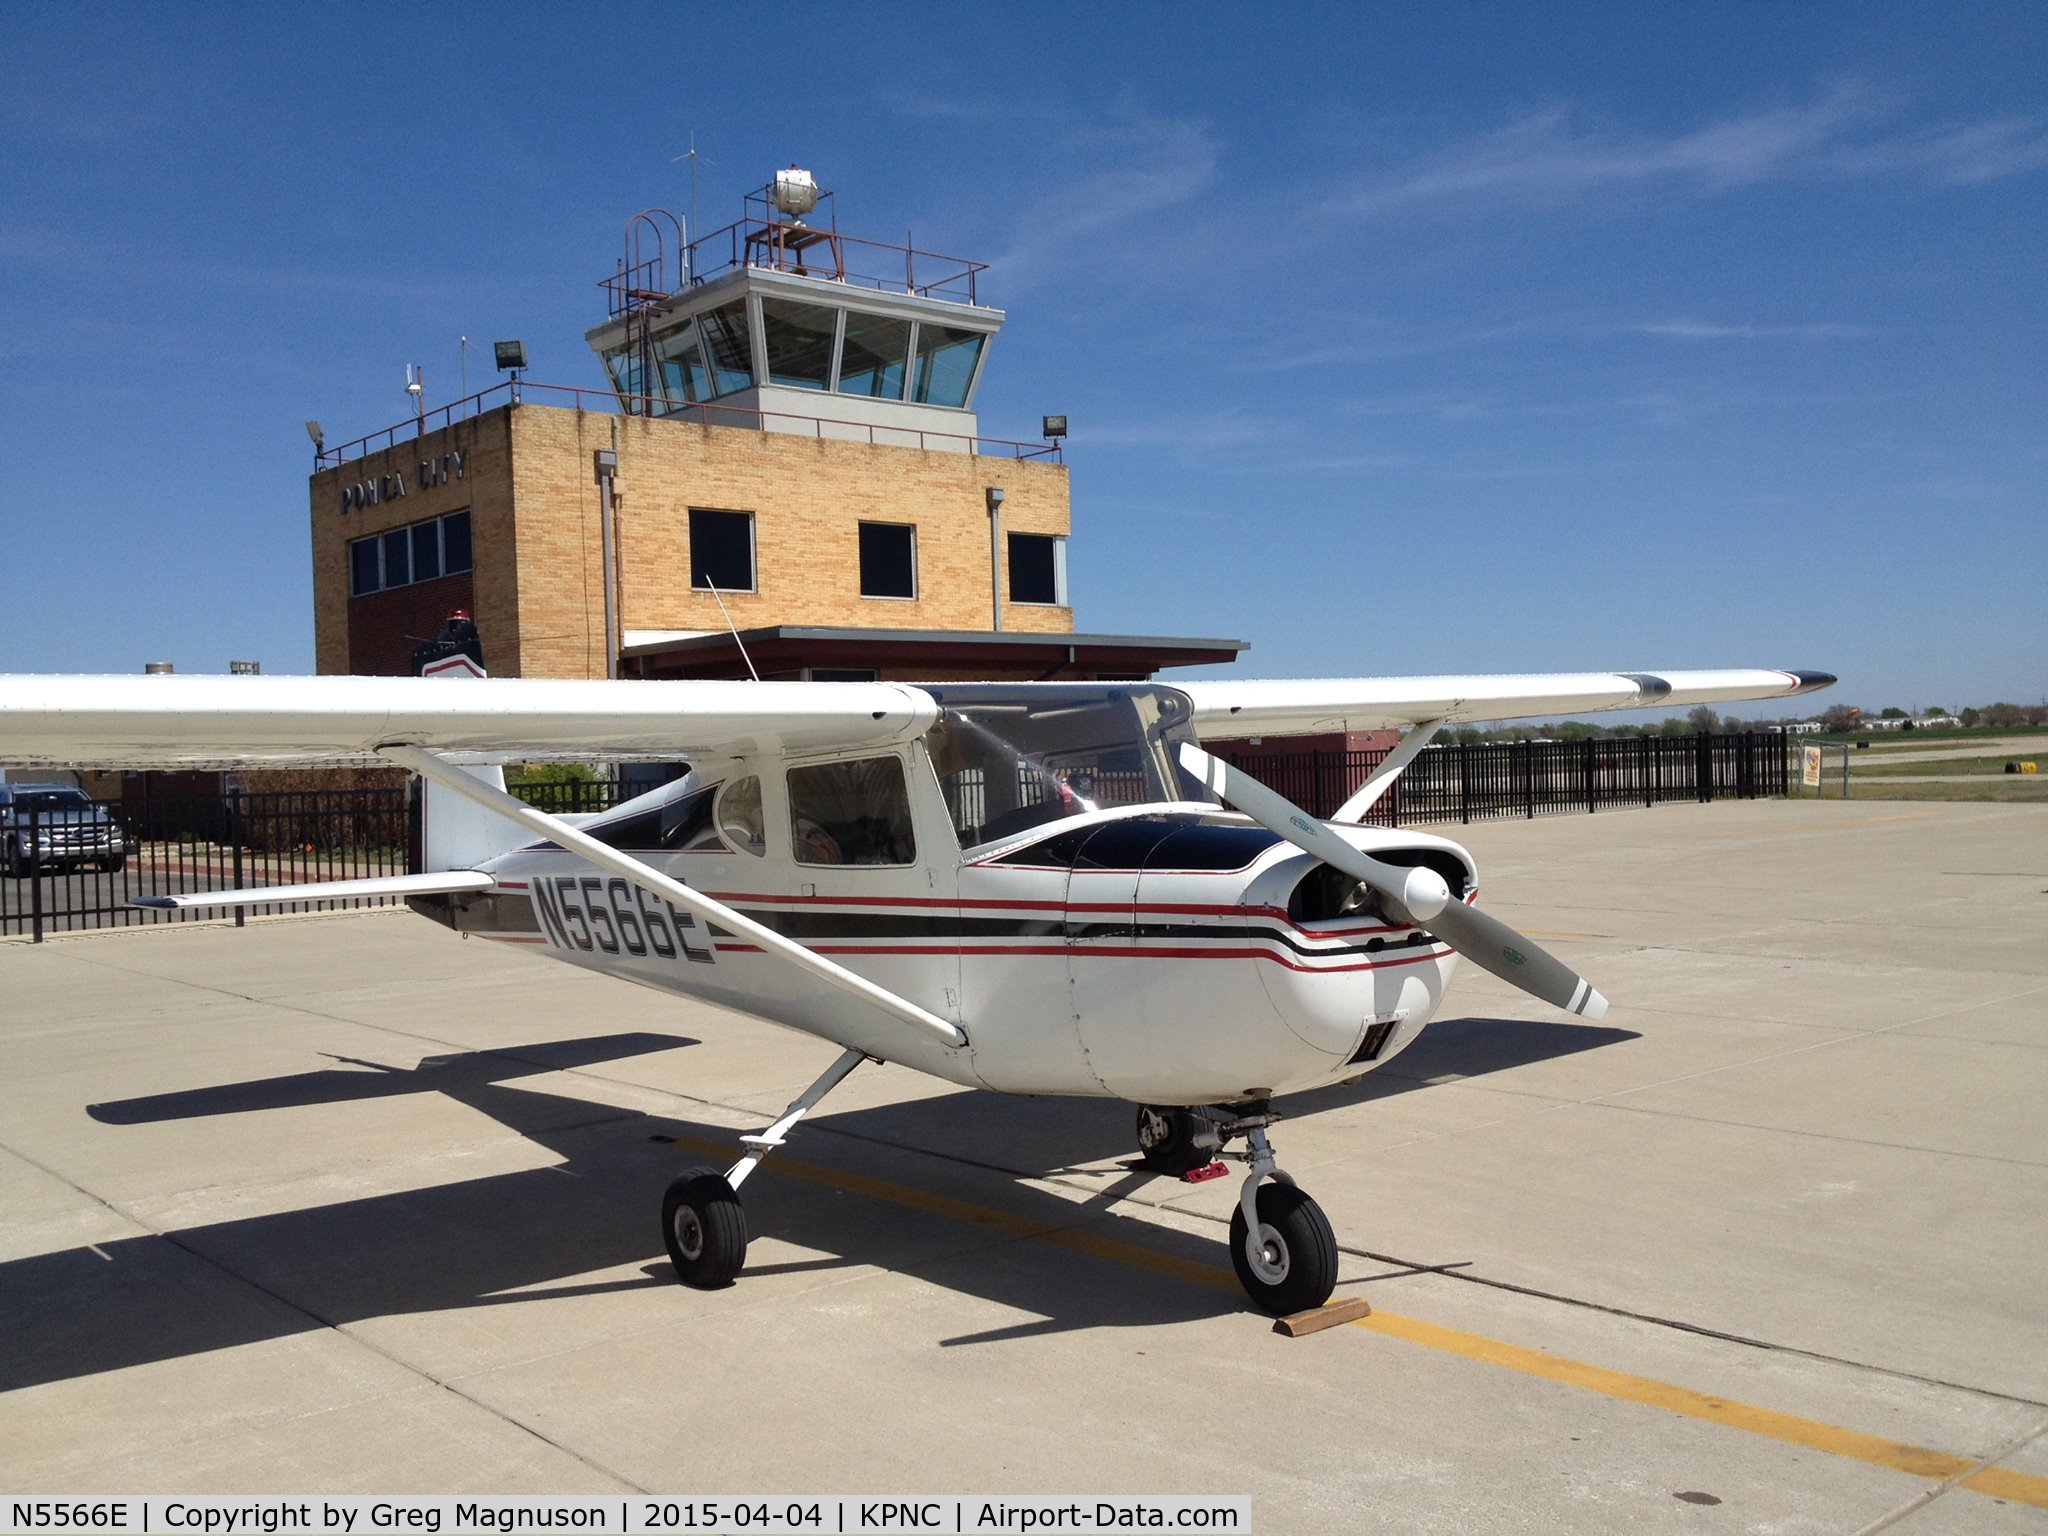 N5566E, 1958 Cessna 150 C/N 17066, N5566E taking a break at KPNC.